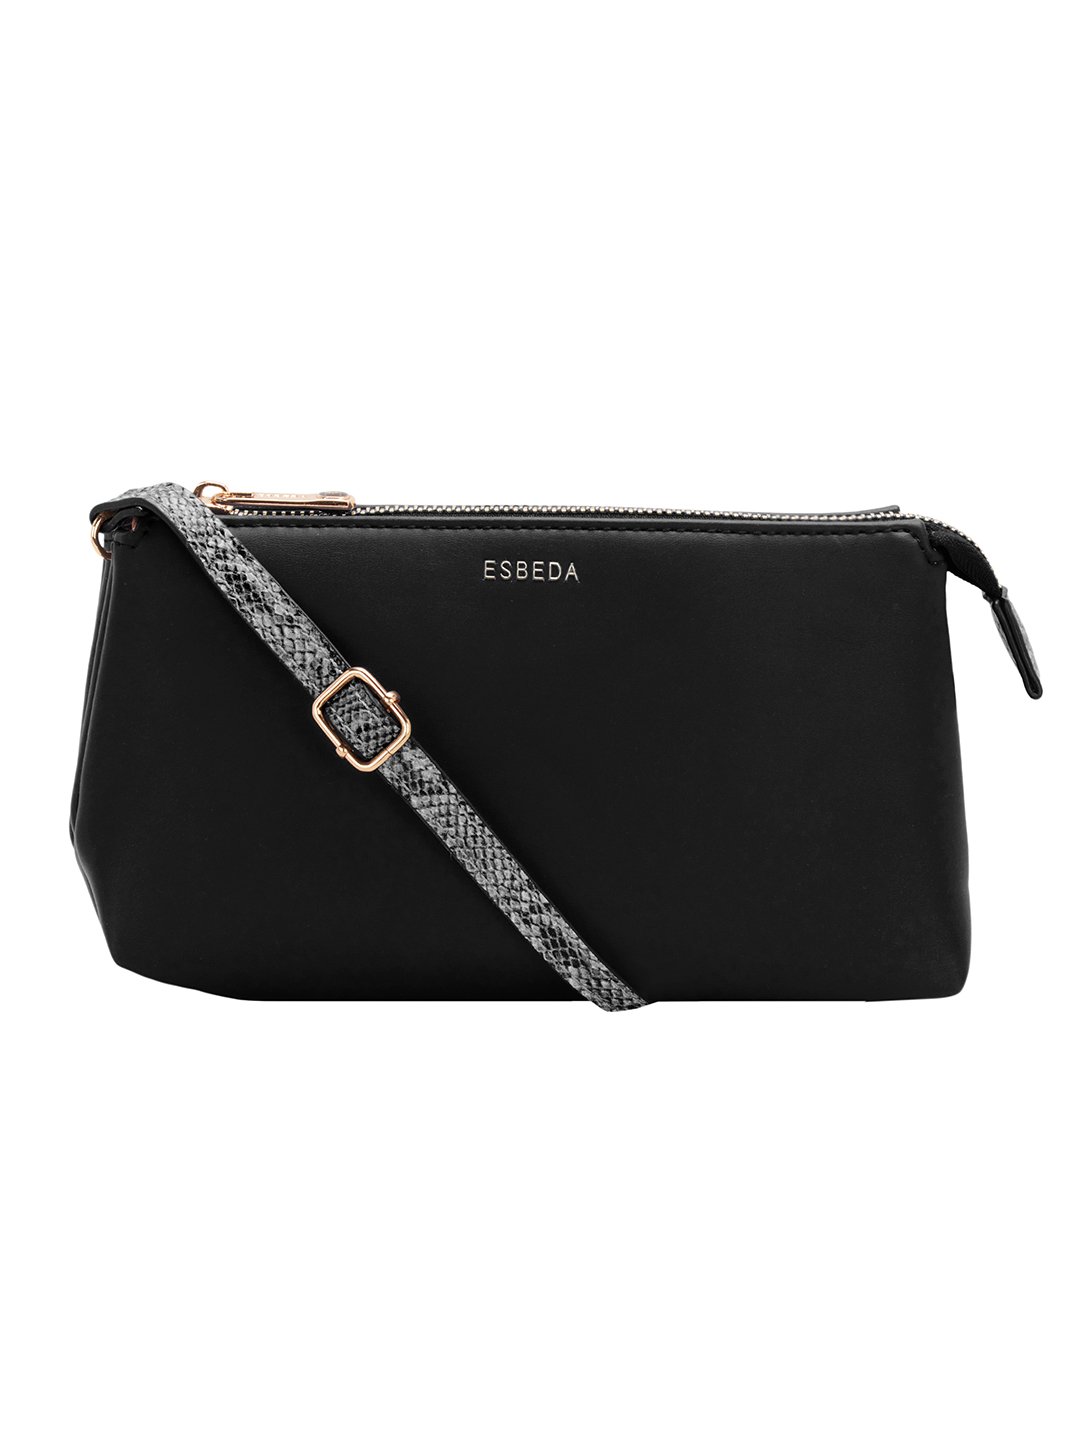 Buy ESBEDA Tan Colour Solid Croco Handbag For Women at Amazon.in